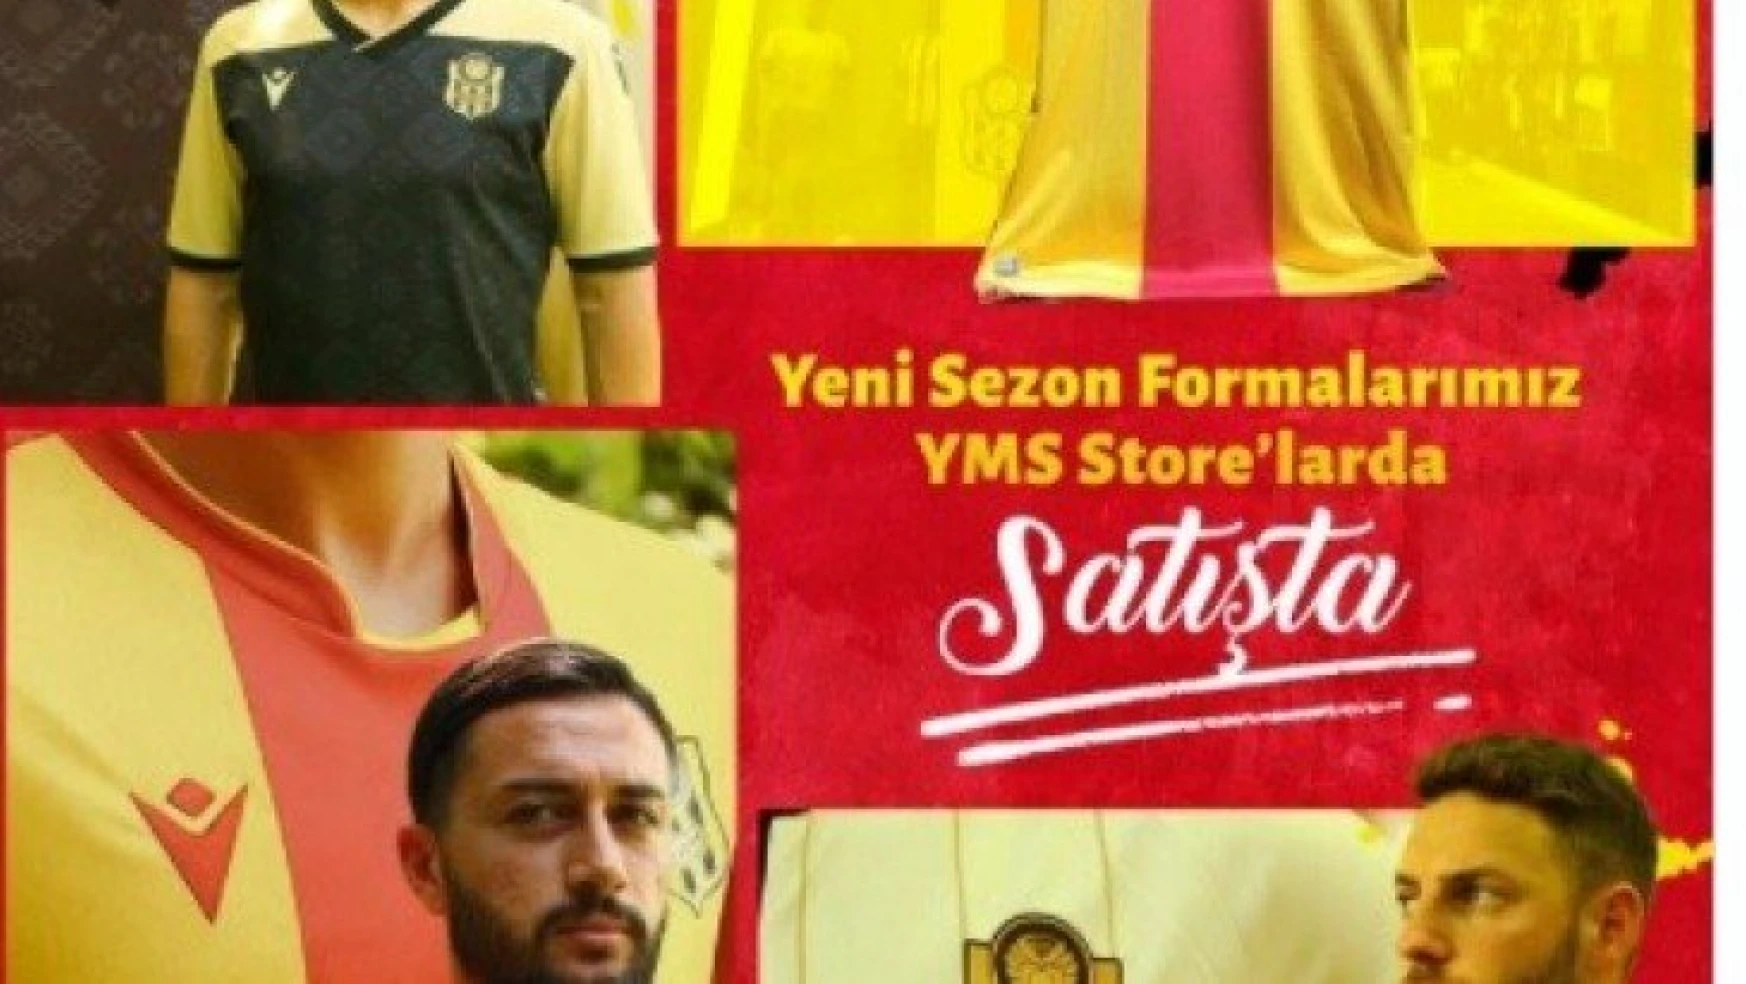 Yeni Malatyaspor'da yeni sezon formalarının satışı başladı